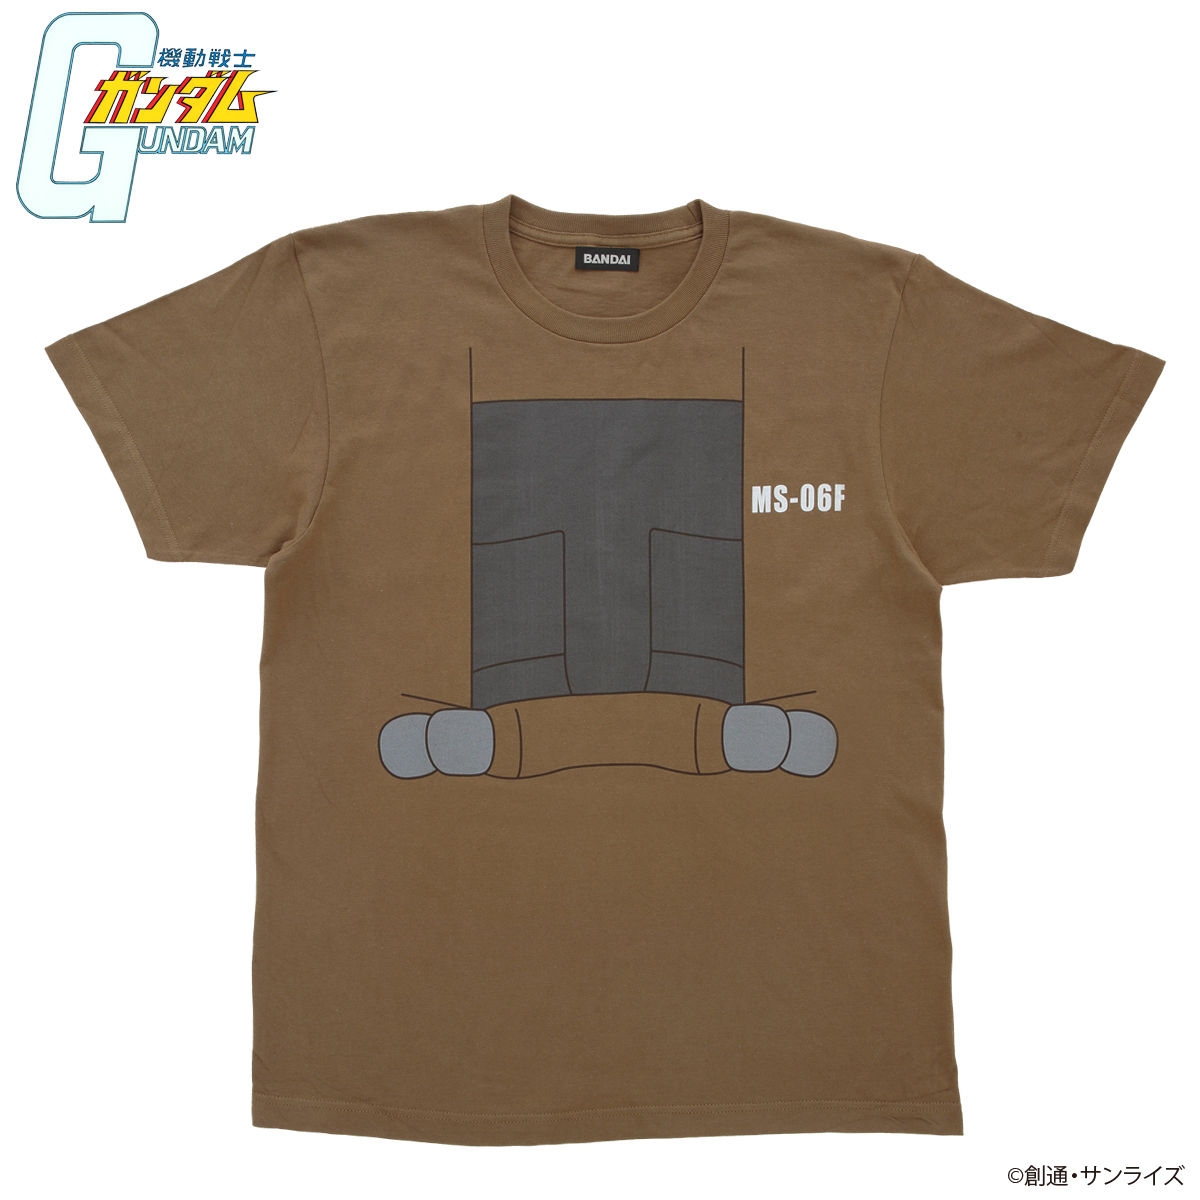 Mobile Suit Gundam Mobile Suit T-shirt